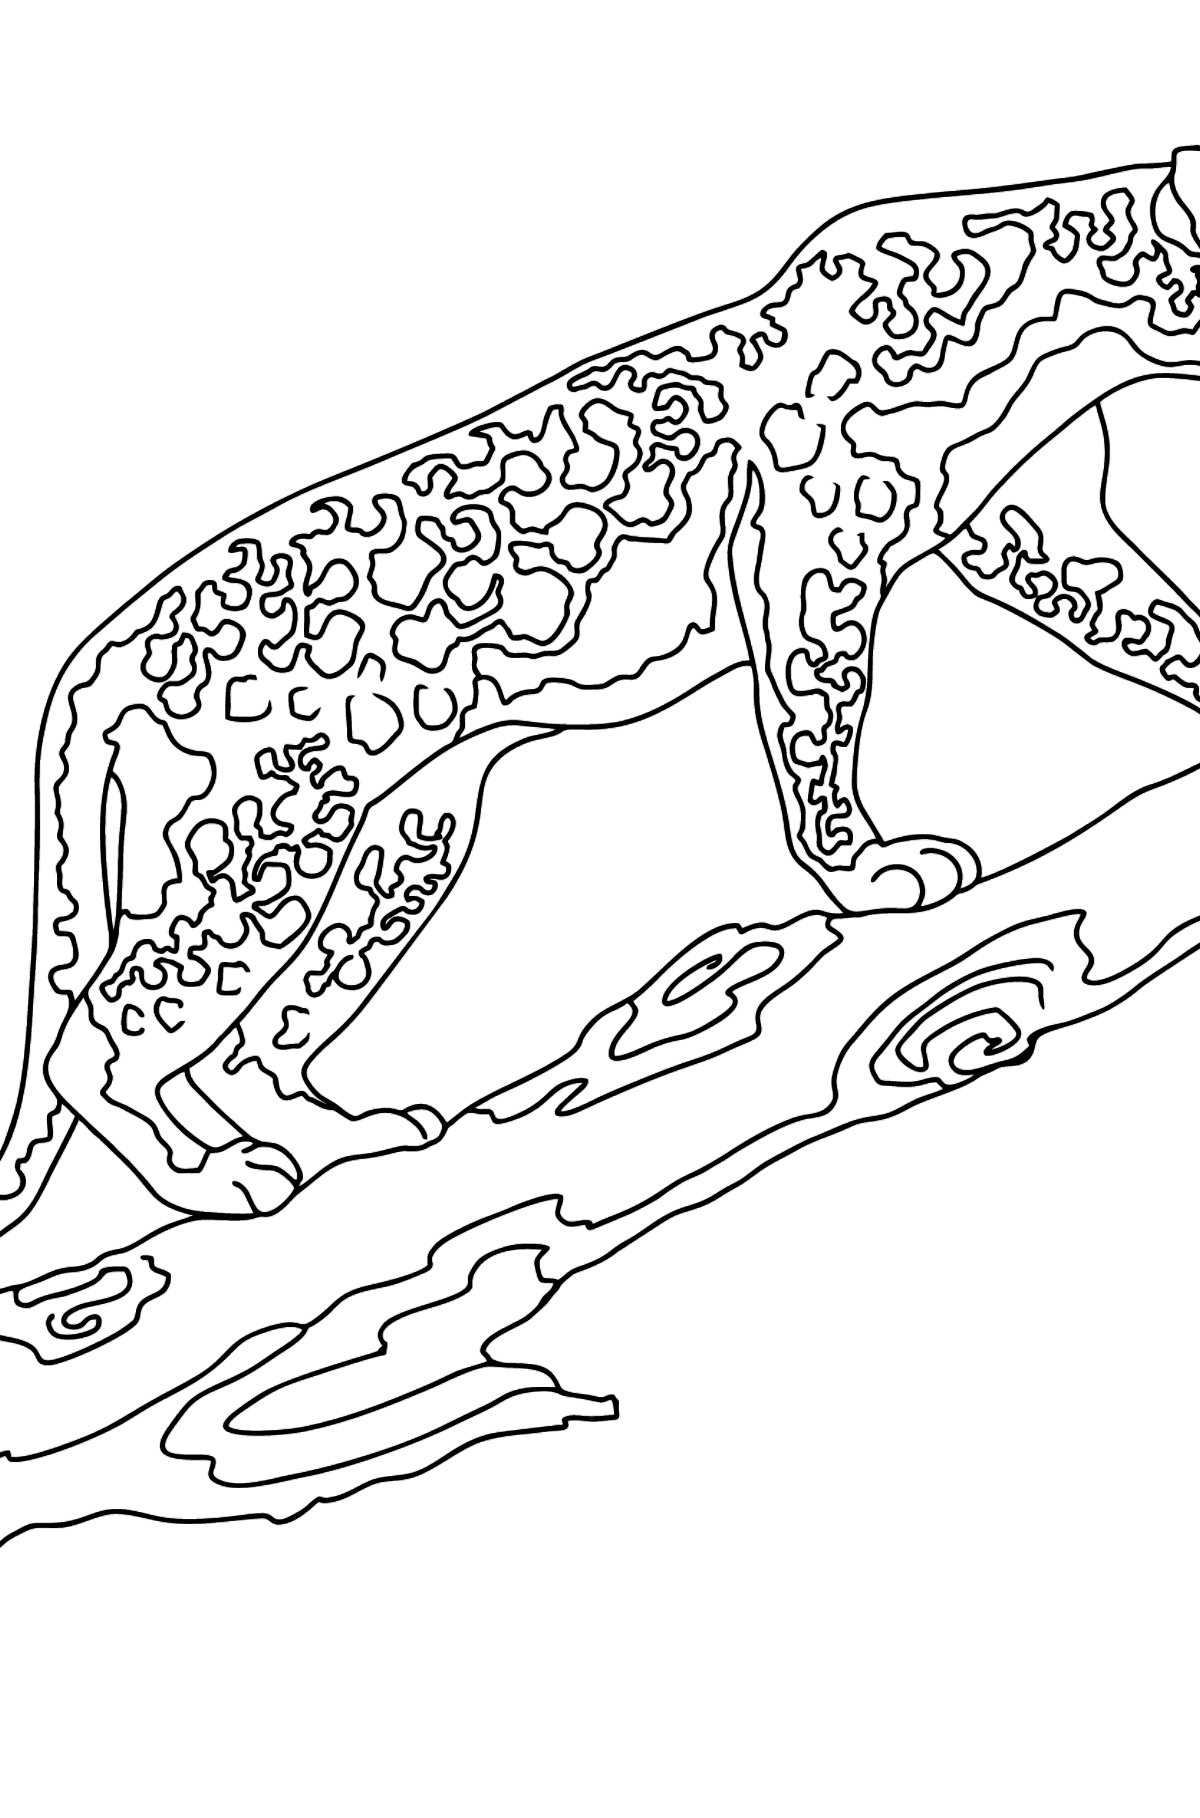 Desenho de lindo leopardo para colorir - Imagens para Colorir para Crianças